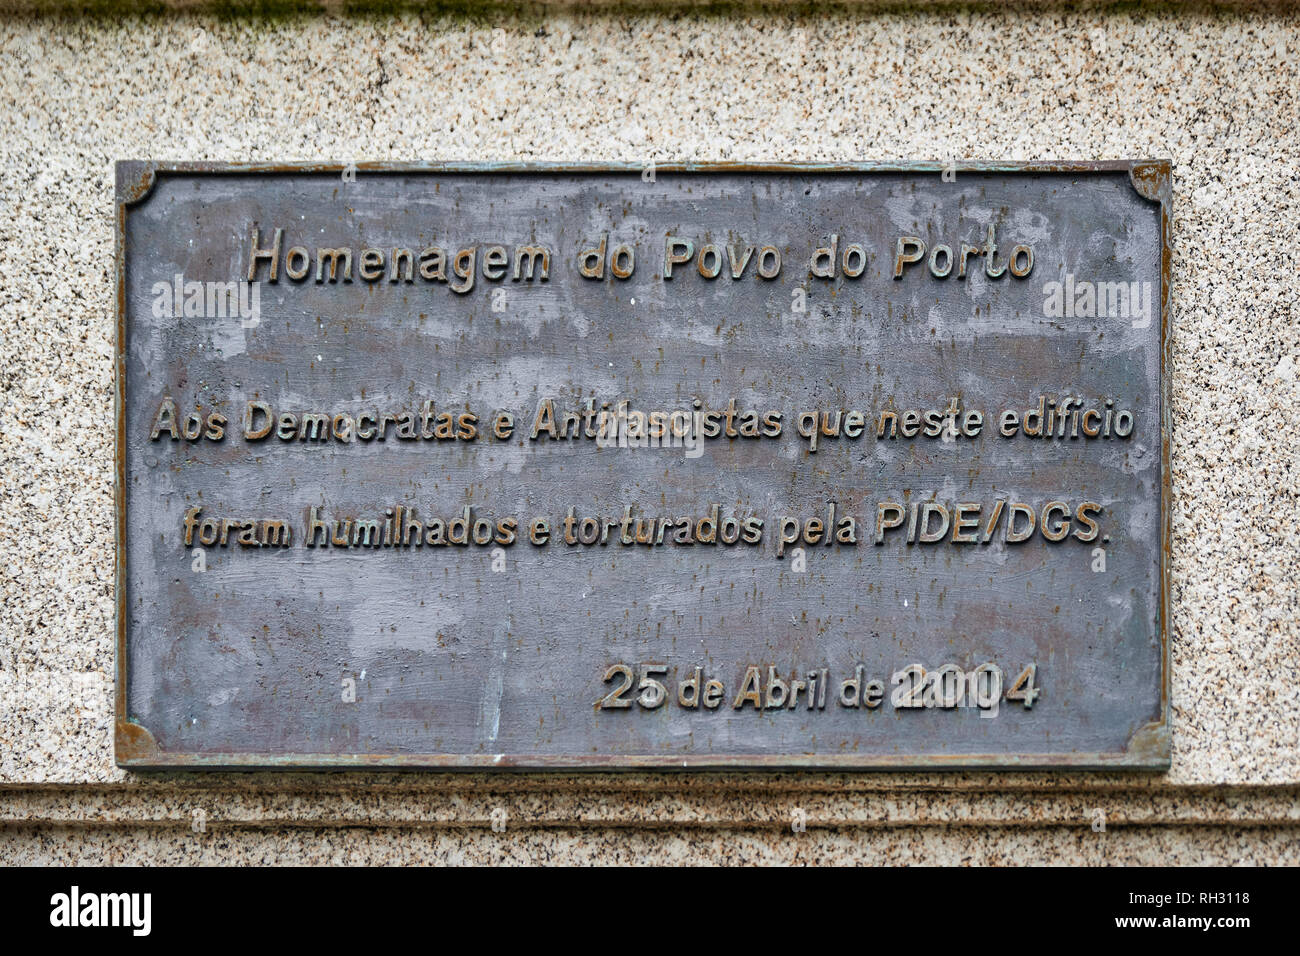 Placa conmemorativa en homenaje del pueblo de Oporto a los demócratas y antifascistas que fueron torturados en Portugal Foto de stock